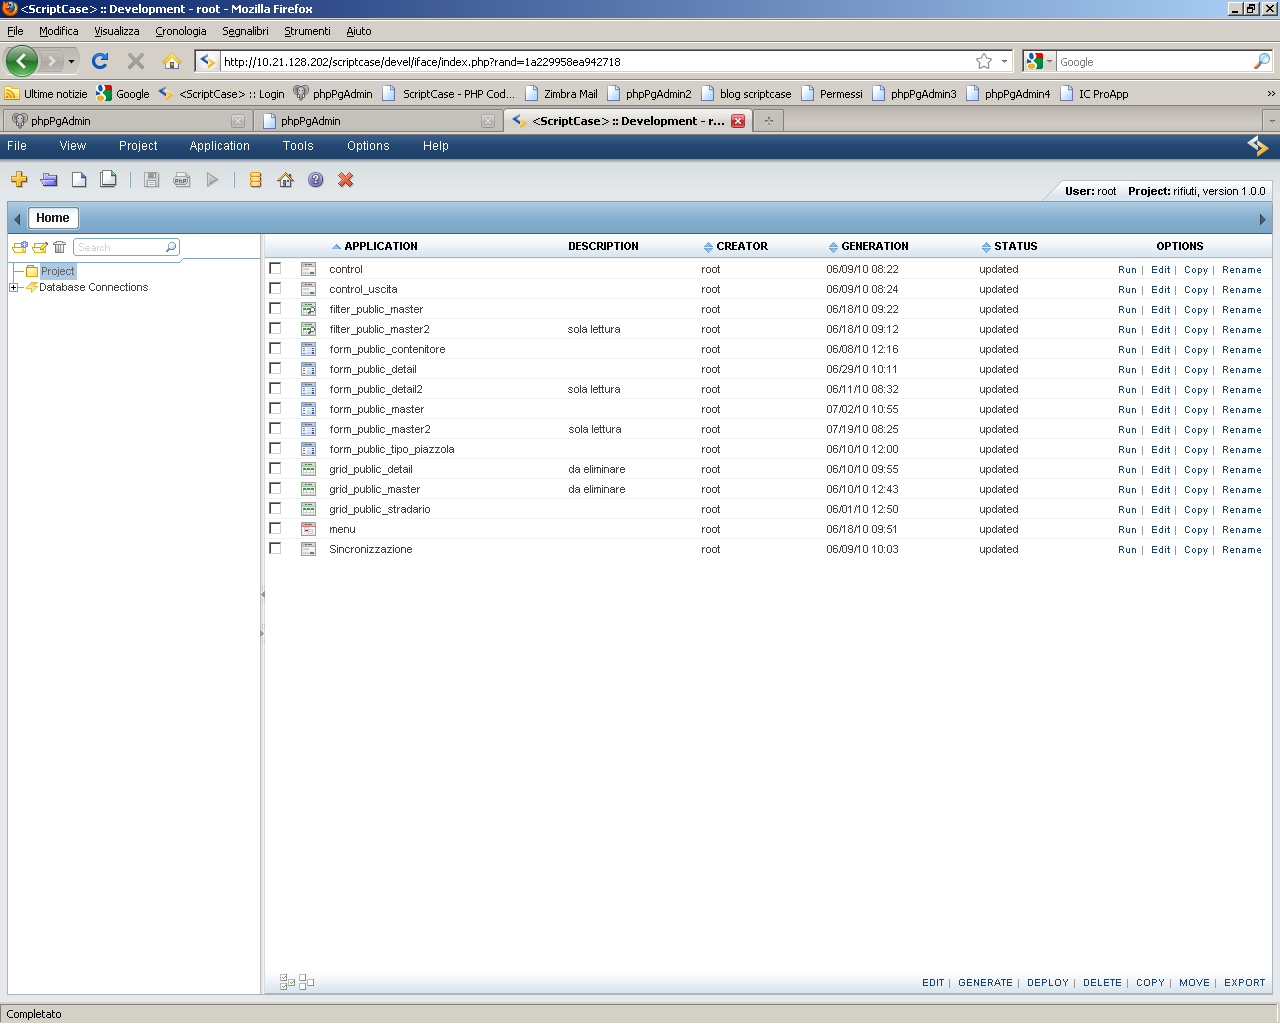 Nella figura sotto è mostrata la schermata principale di Scriptcase con l elenco di tutte le applicazioni create per il progetto Piazzole Ecologiche: Come si può vedere, nella schermata principale